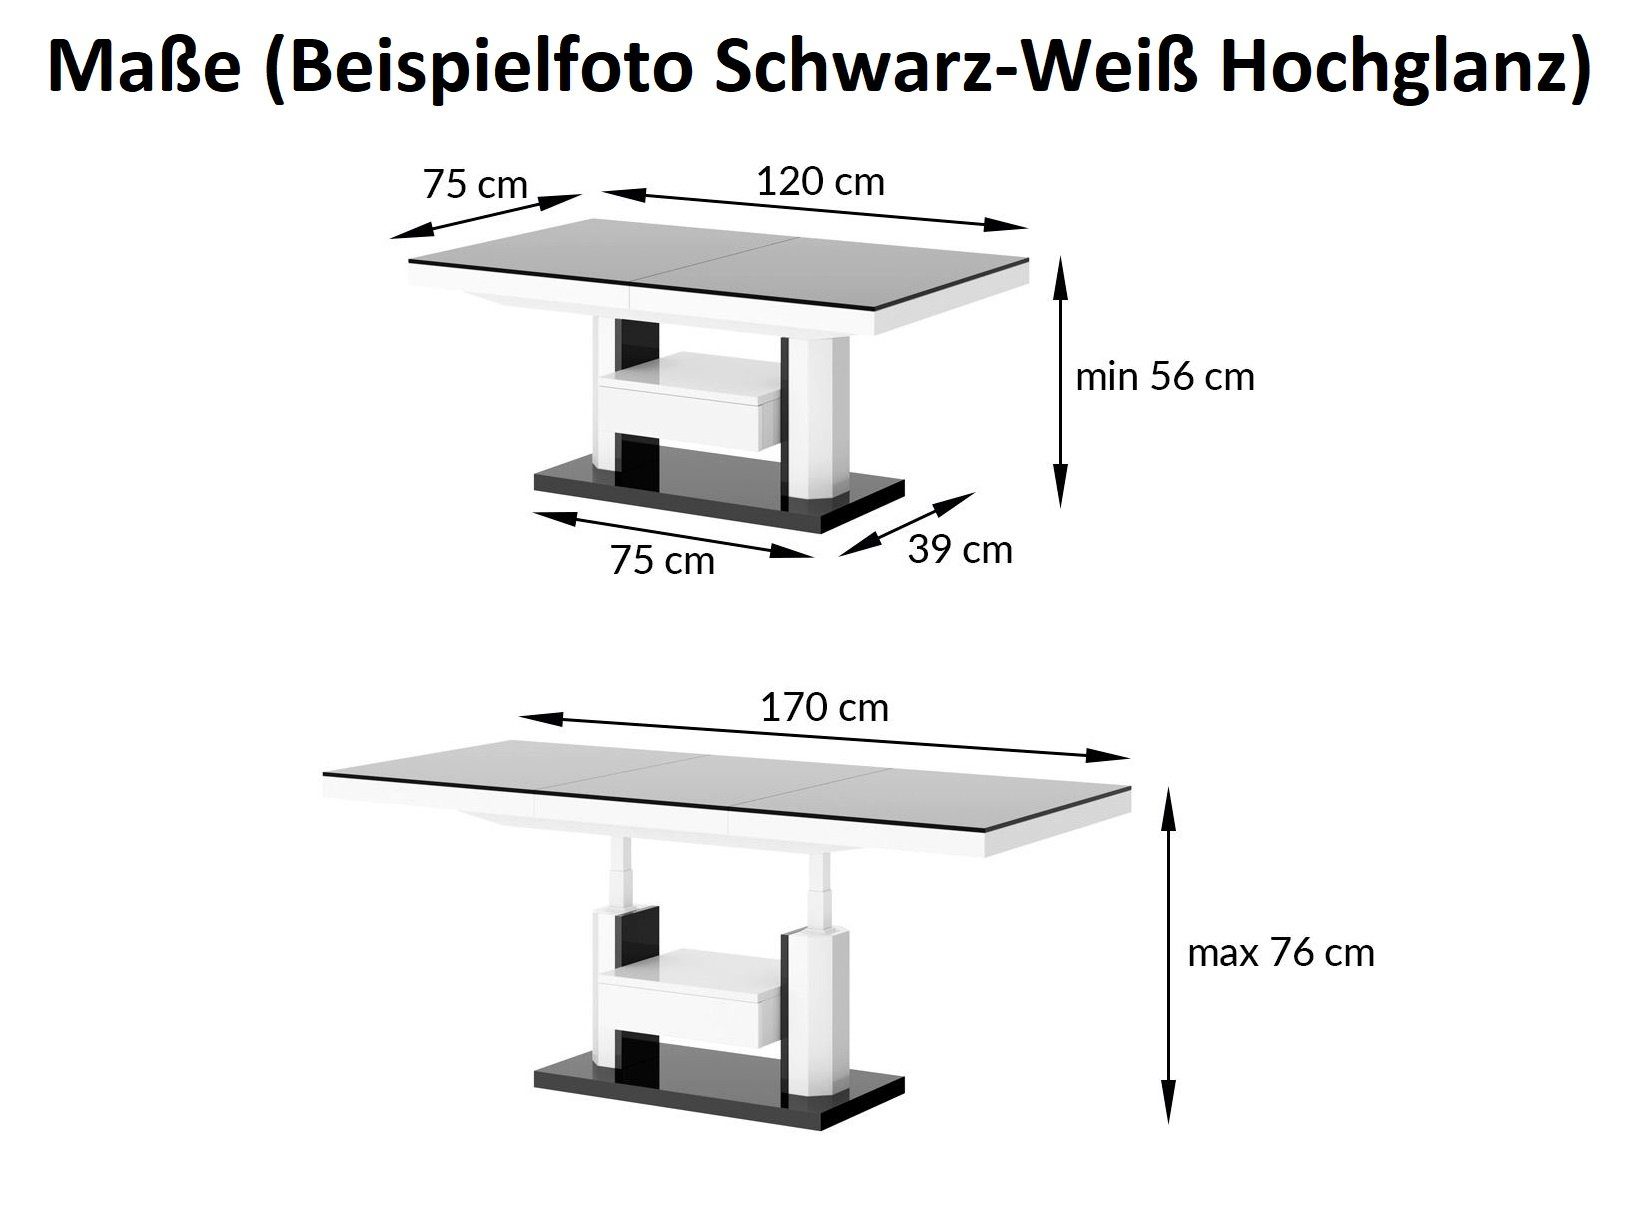 Weiß / Hochglanz höhenverstellbar Design Couchtisch stufenlos Beton HM-120 Hochglanz designimpex Esstisch ausziehbar